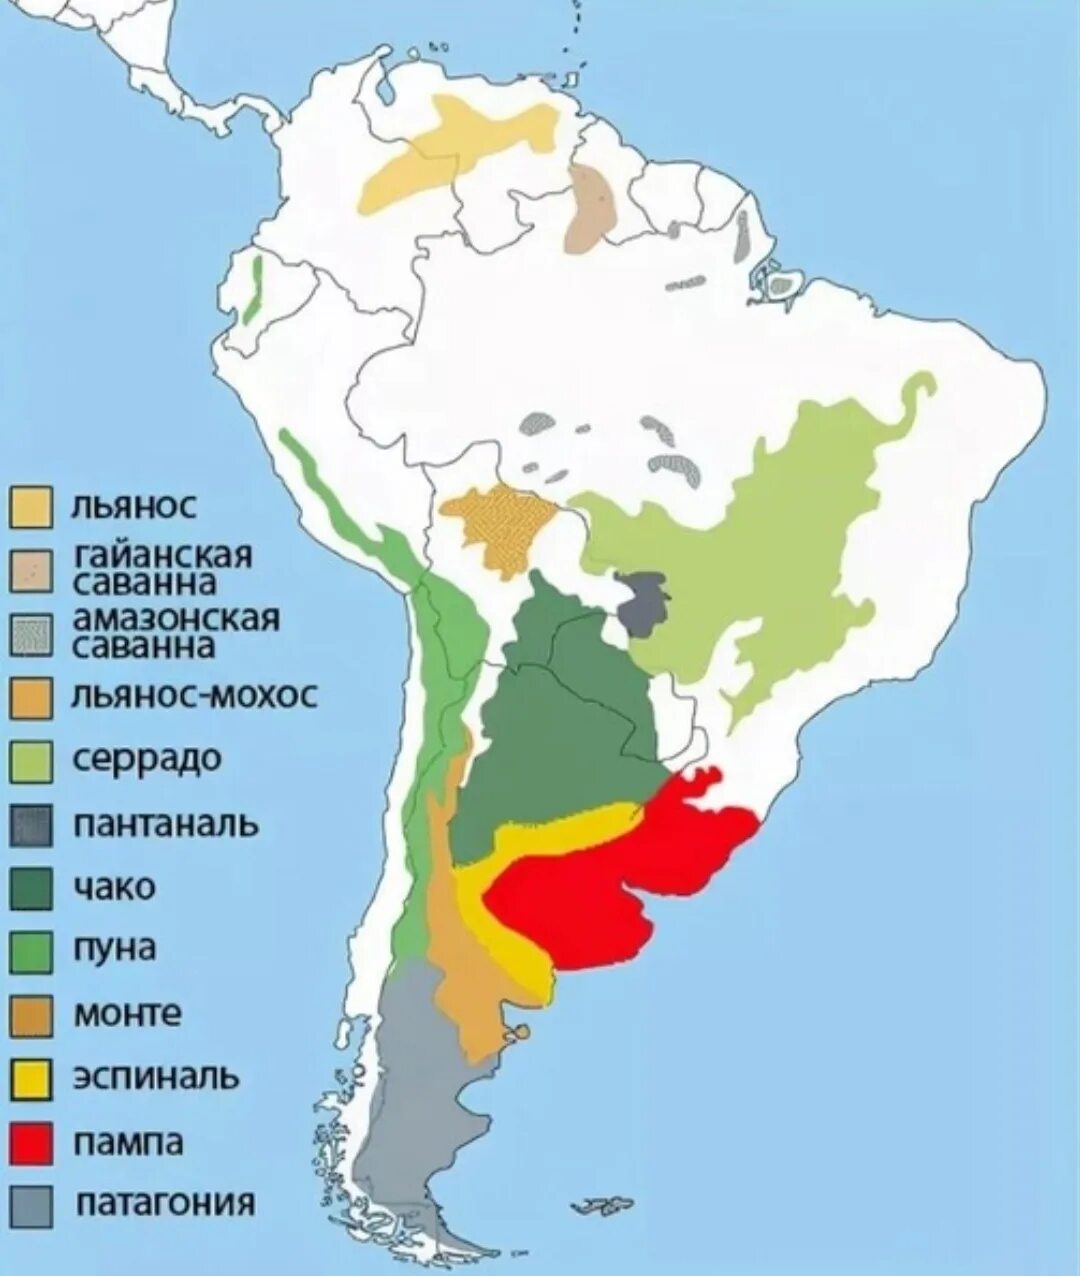 Пампа на карте Южной Америки. Природные зоны Аргентины карта. Пампа низменность на карте Южной Америки. Пампа природная зона Южной Америки. Природные зоны аргентины и их основные особенности